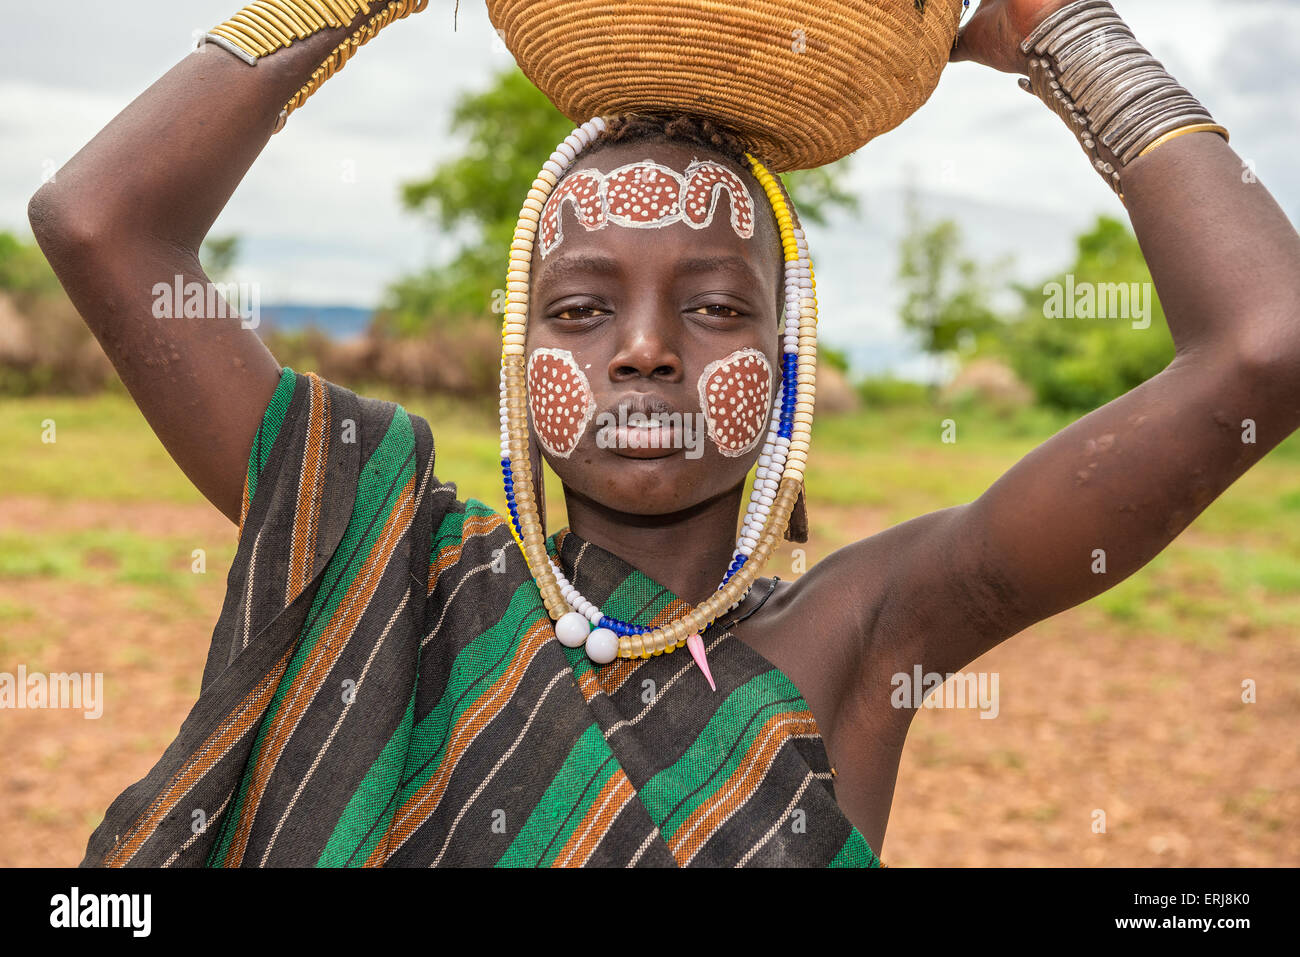 Junge aus dem afrikanischen Stamm Mursi mit traditionellen Schmuck in Mago Nationalpark, Äthiopien. Stockfoto